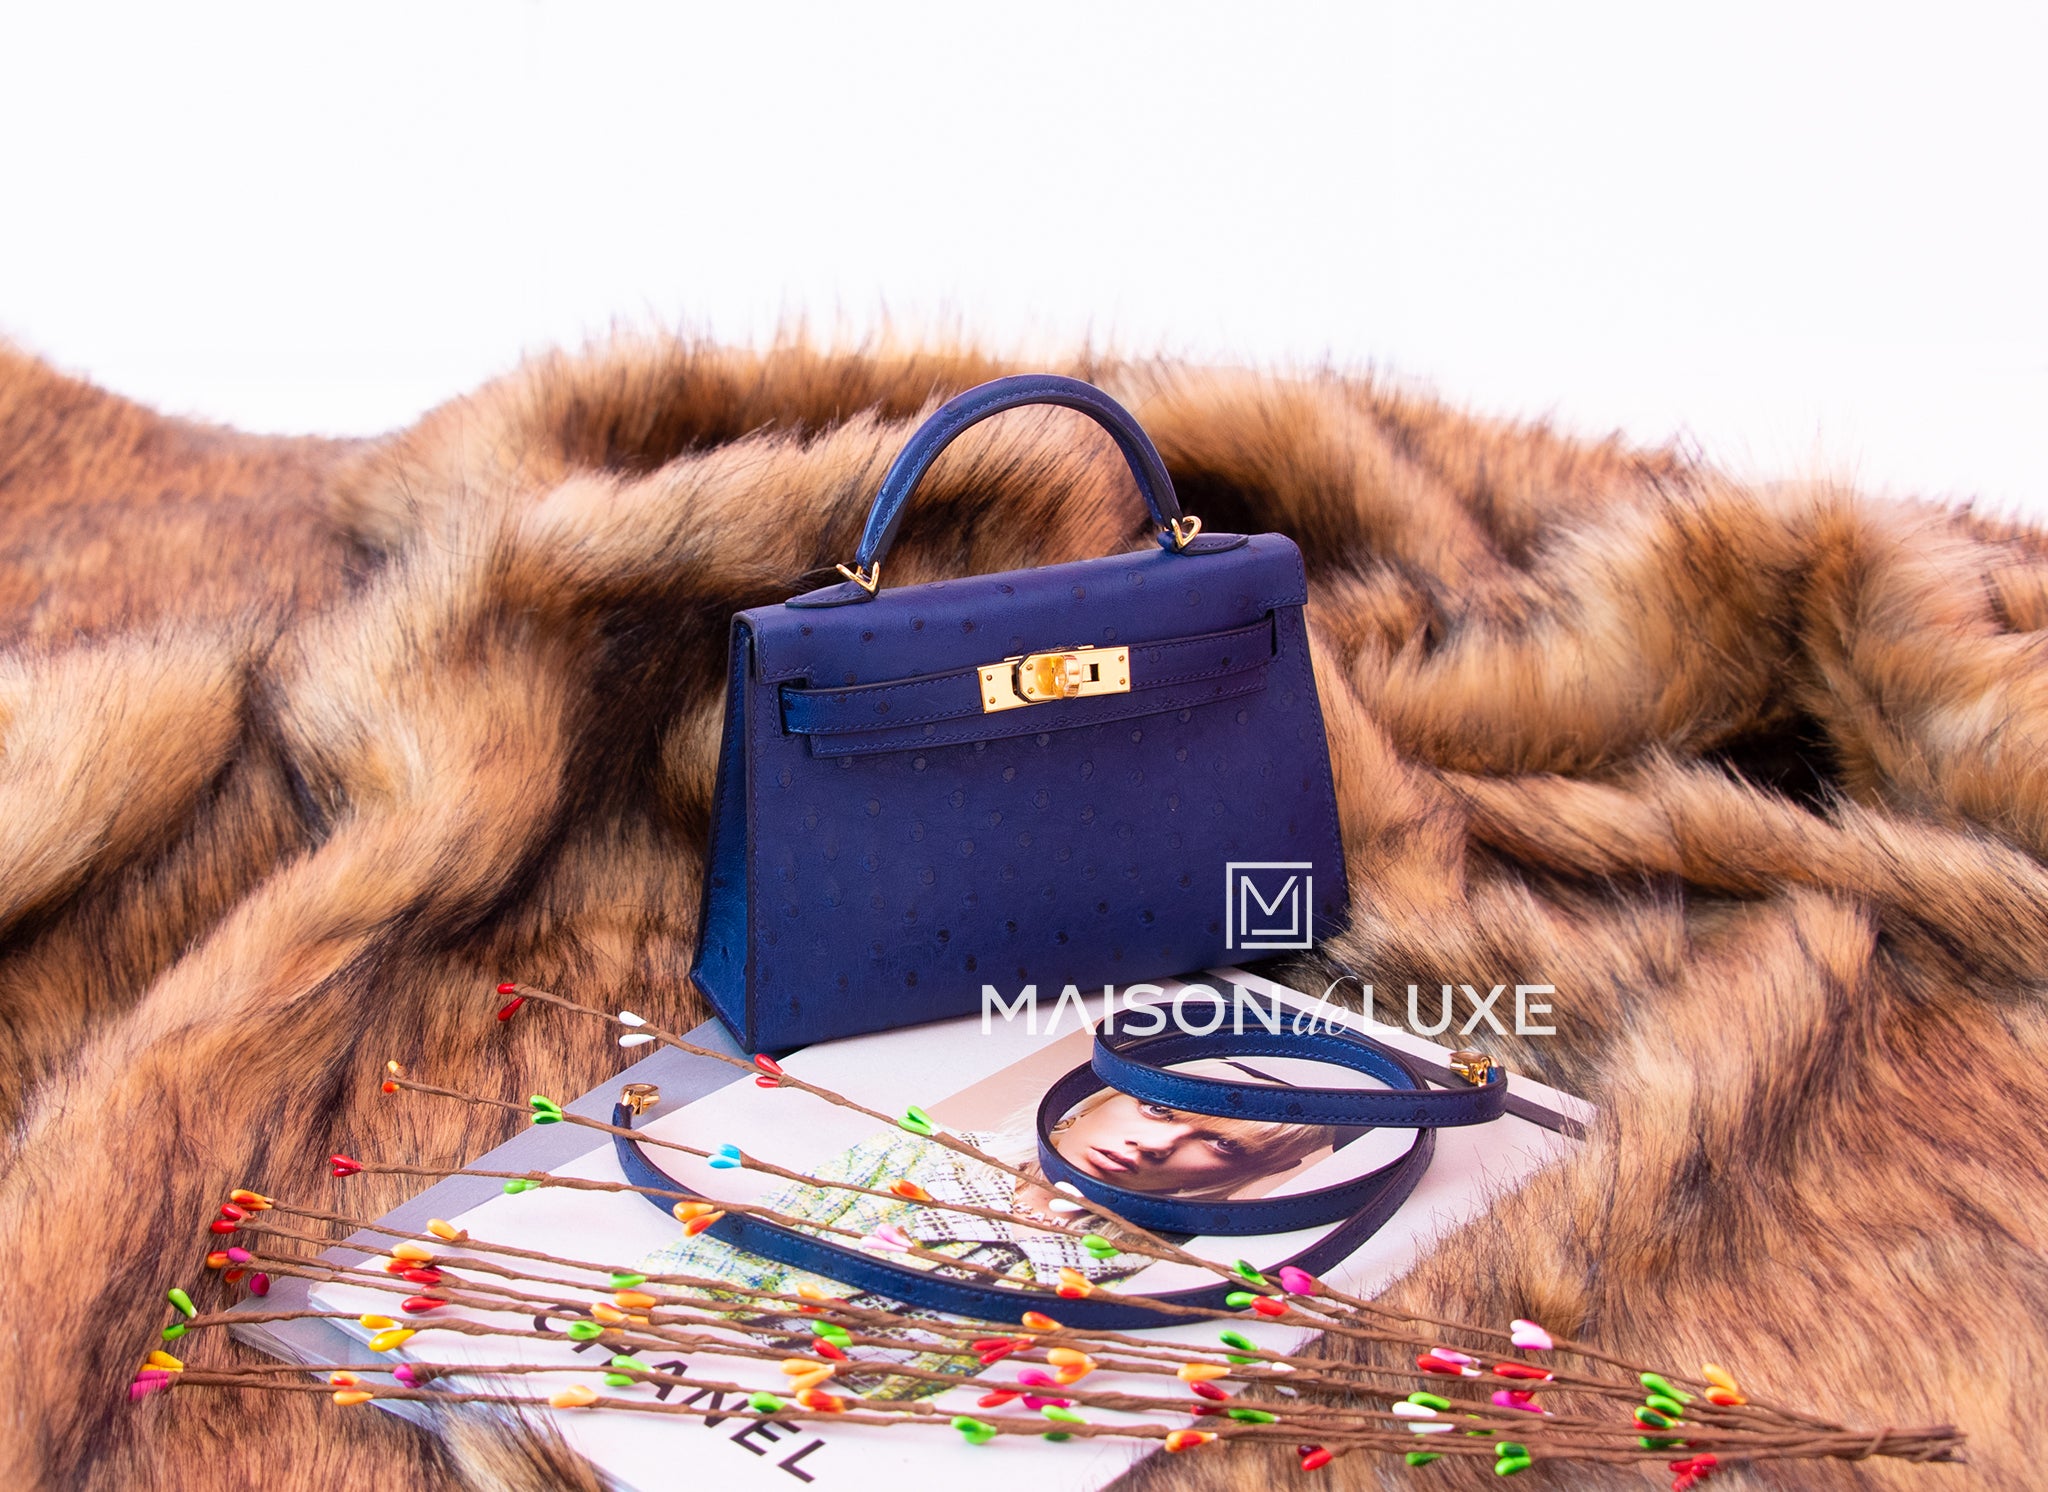 Kelly mini ostrich handbag Hermès Grey in Ostrich - 36340537